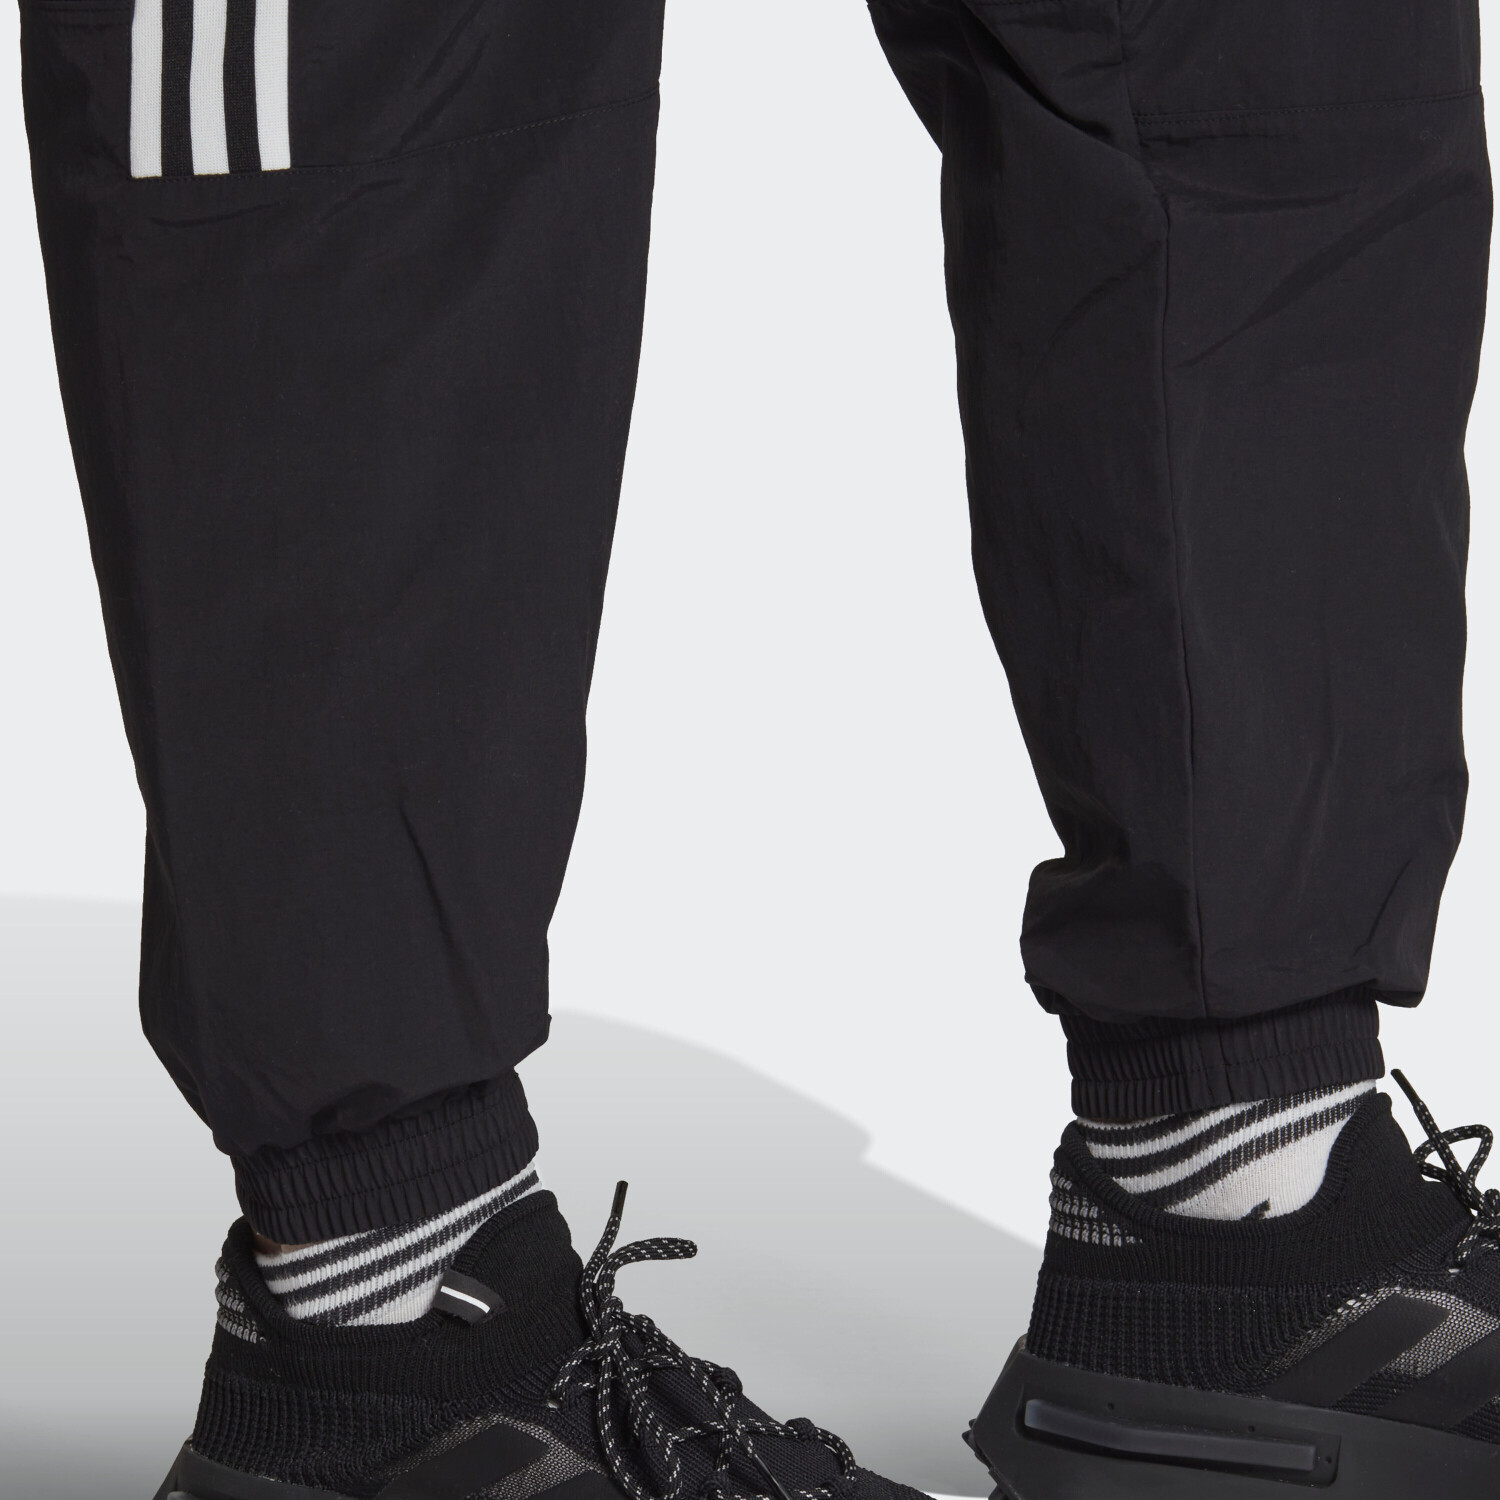 ab 45,00 bei black Trefoil € Adidas Lock-Up Preisvergleich Herren | Trainingshose adicolor Classics